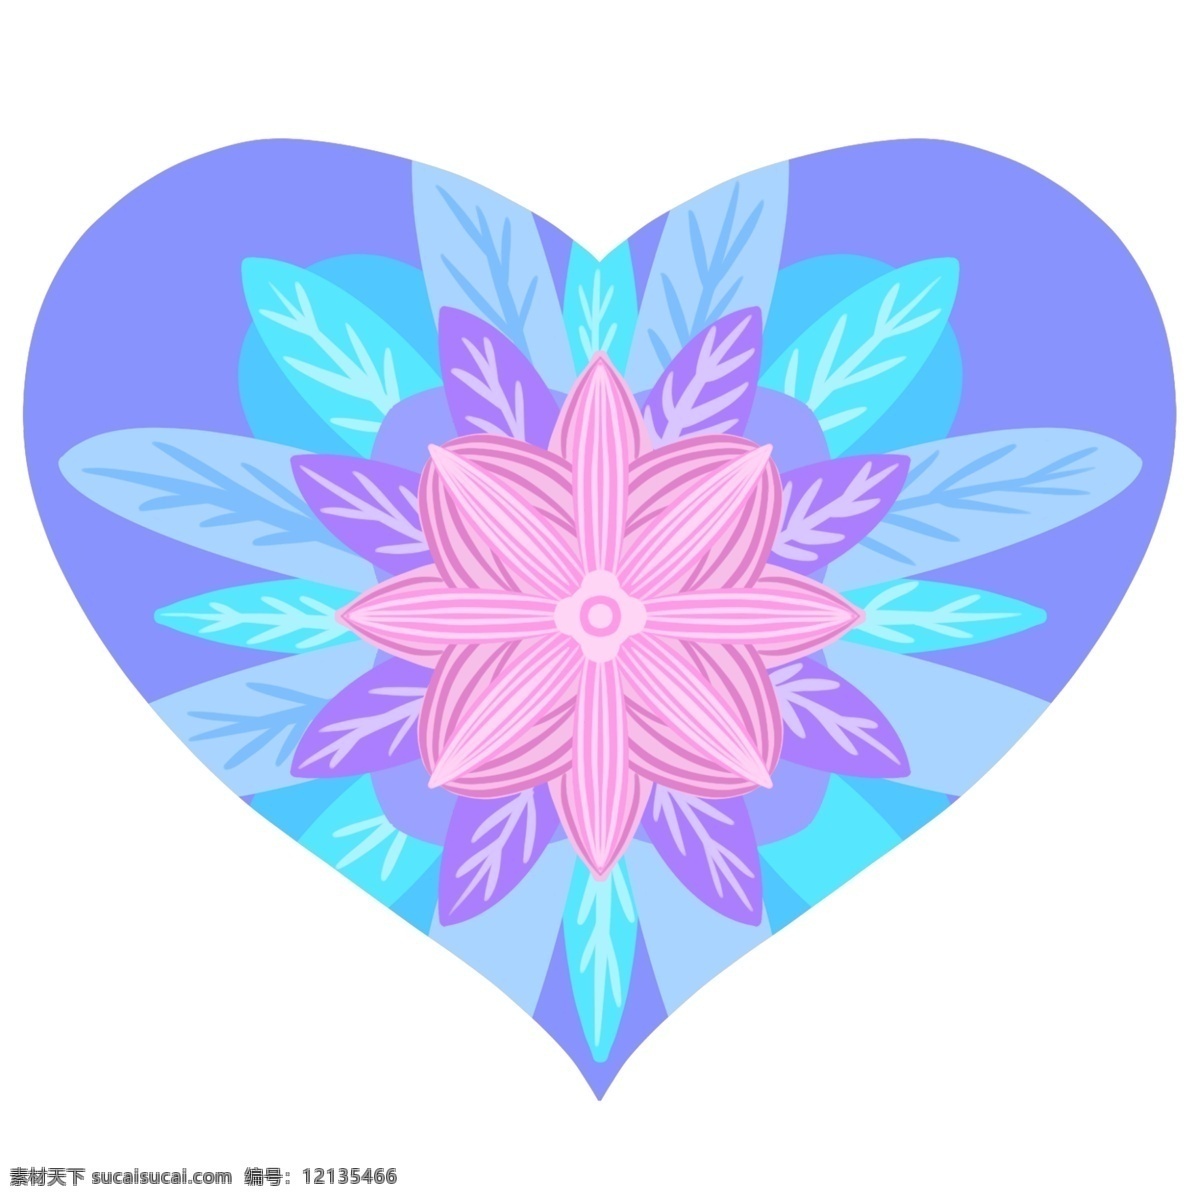 花朵 爱心 卡通 插画 花朵的爱心 卡通插画 爱心插画 表达爱心 爱心装饰 爱情标志 蓝色的爱心